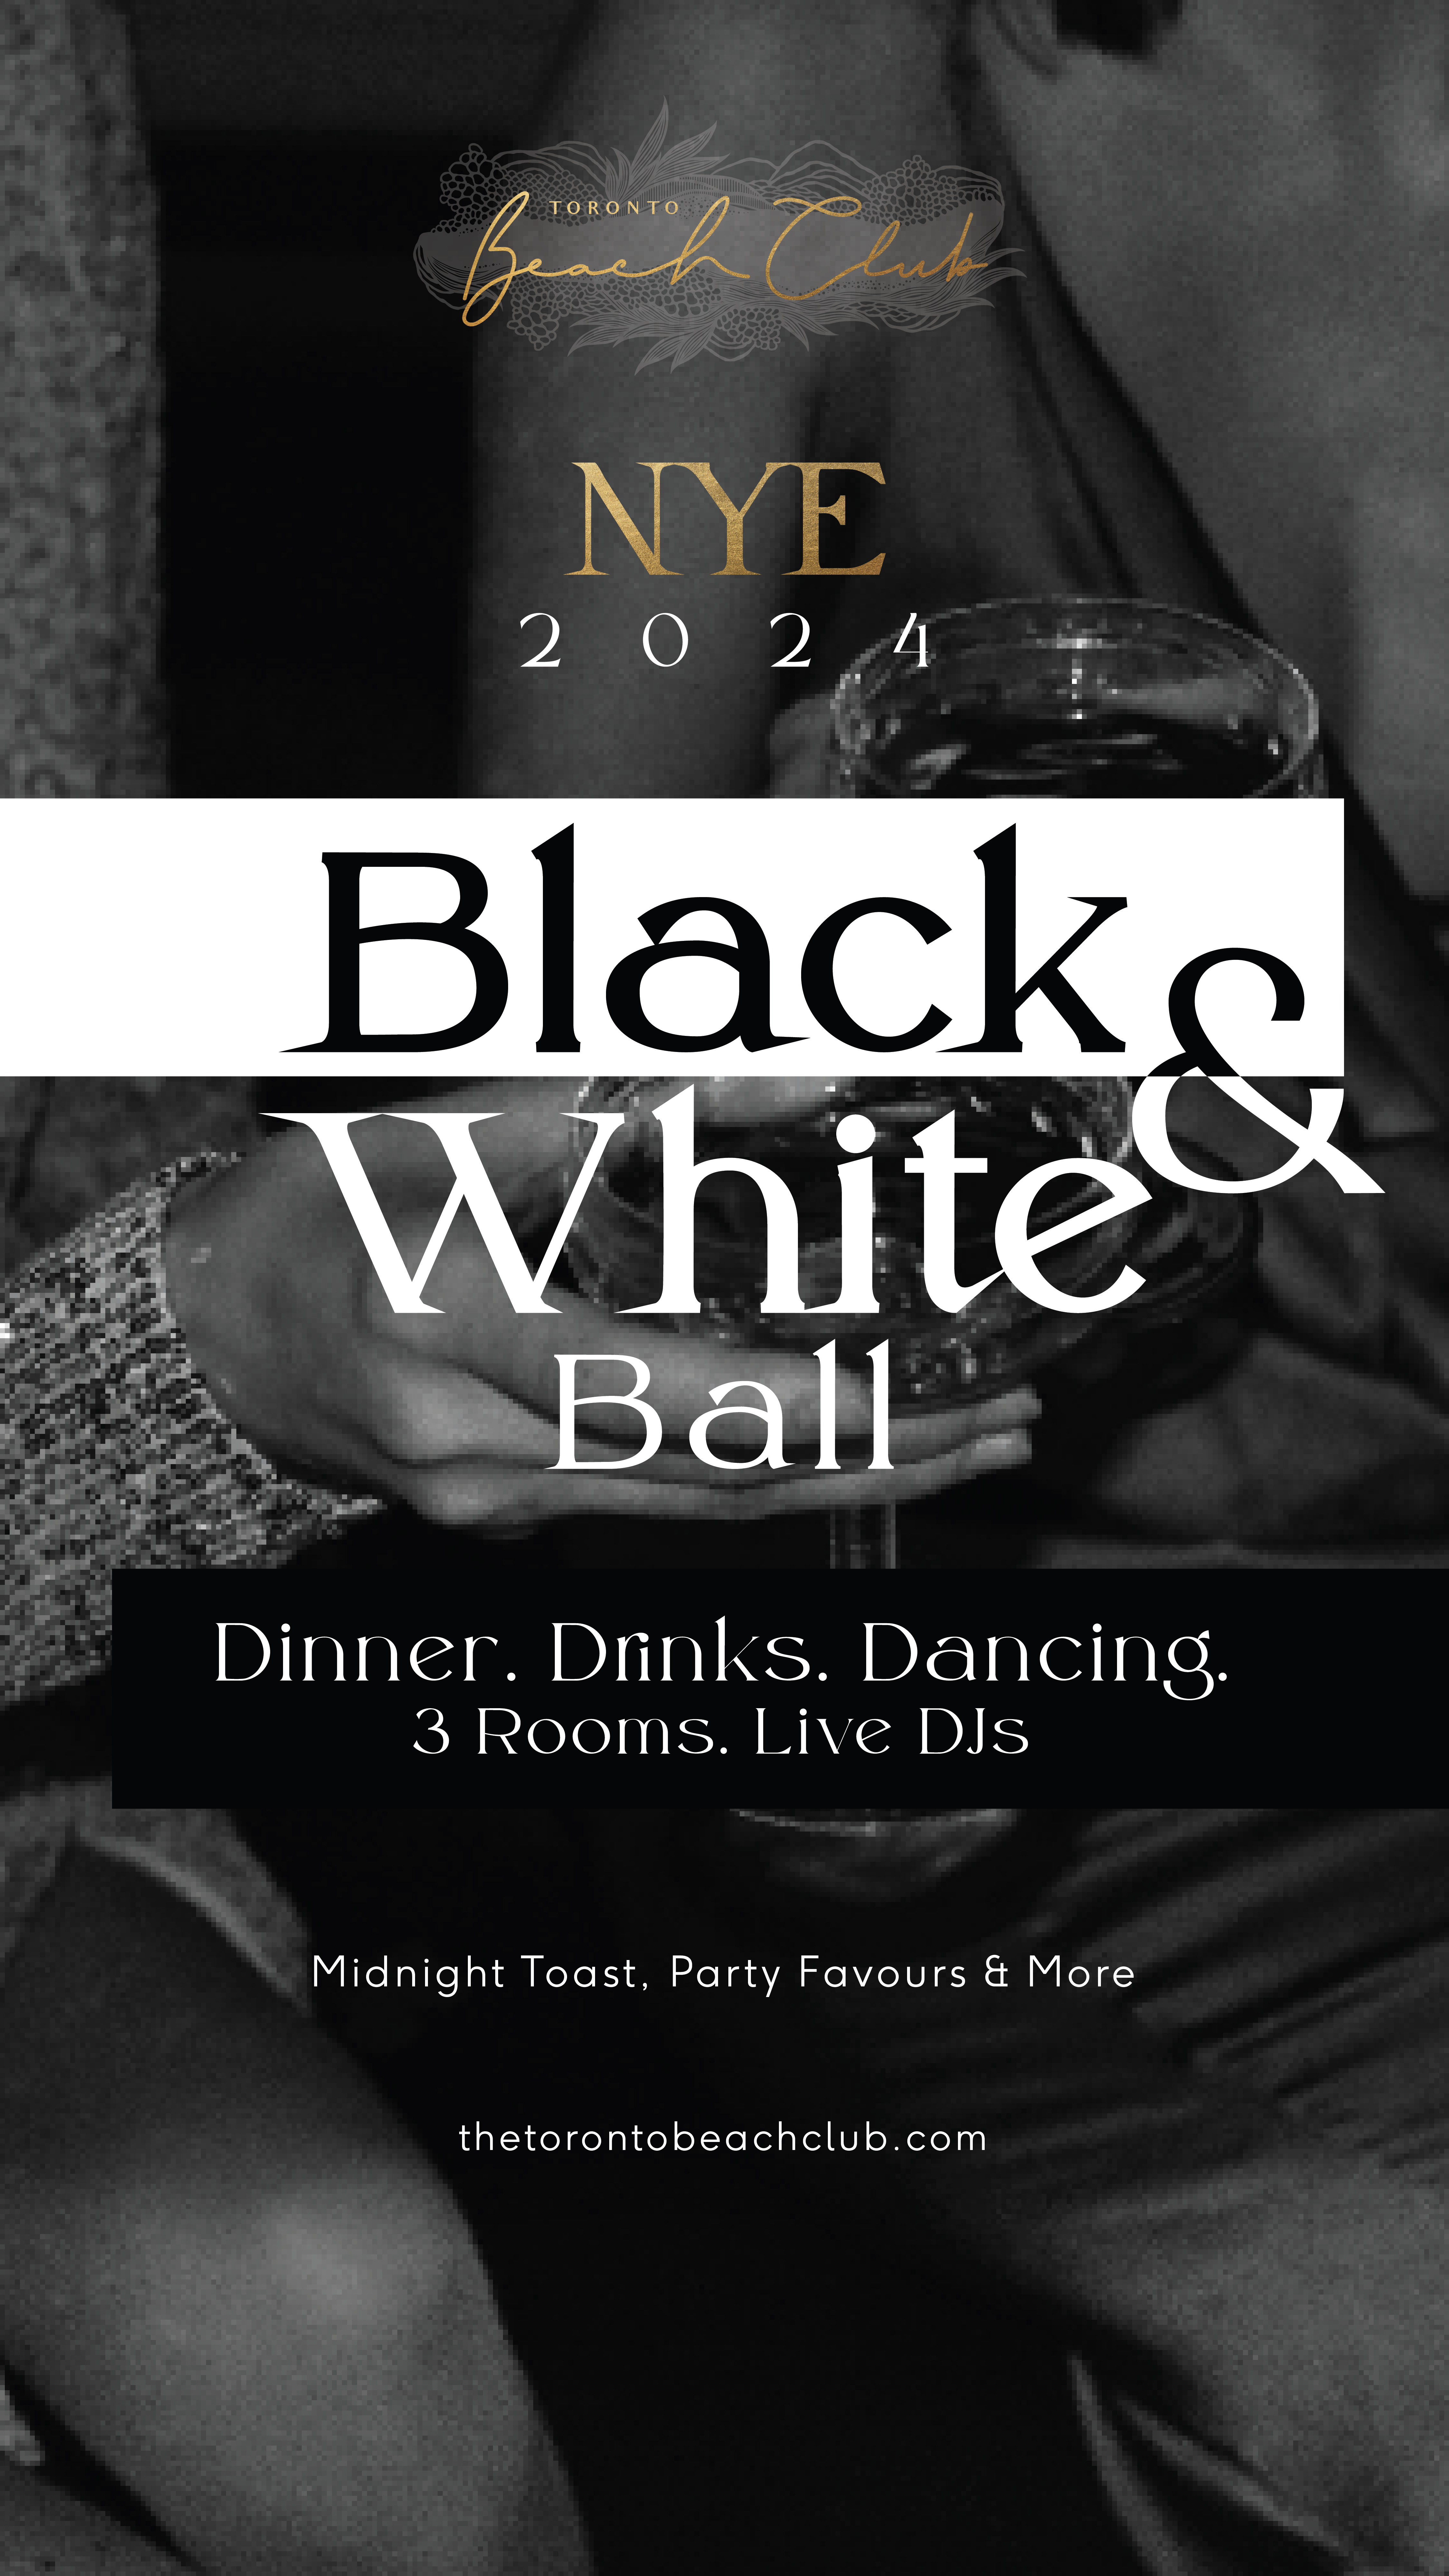 6TH ANNUAL NYE 2024 BLACK & WHITE BALL AT TORONTO BEACH CLUB